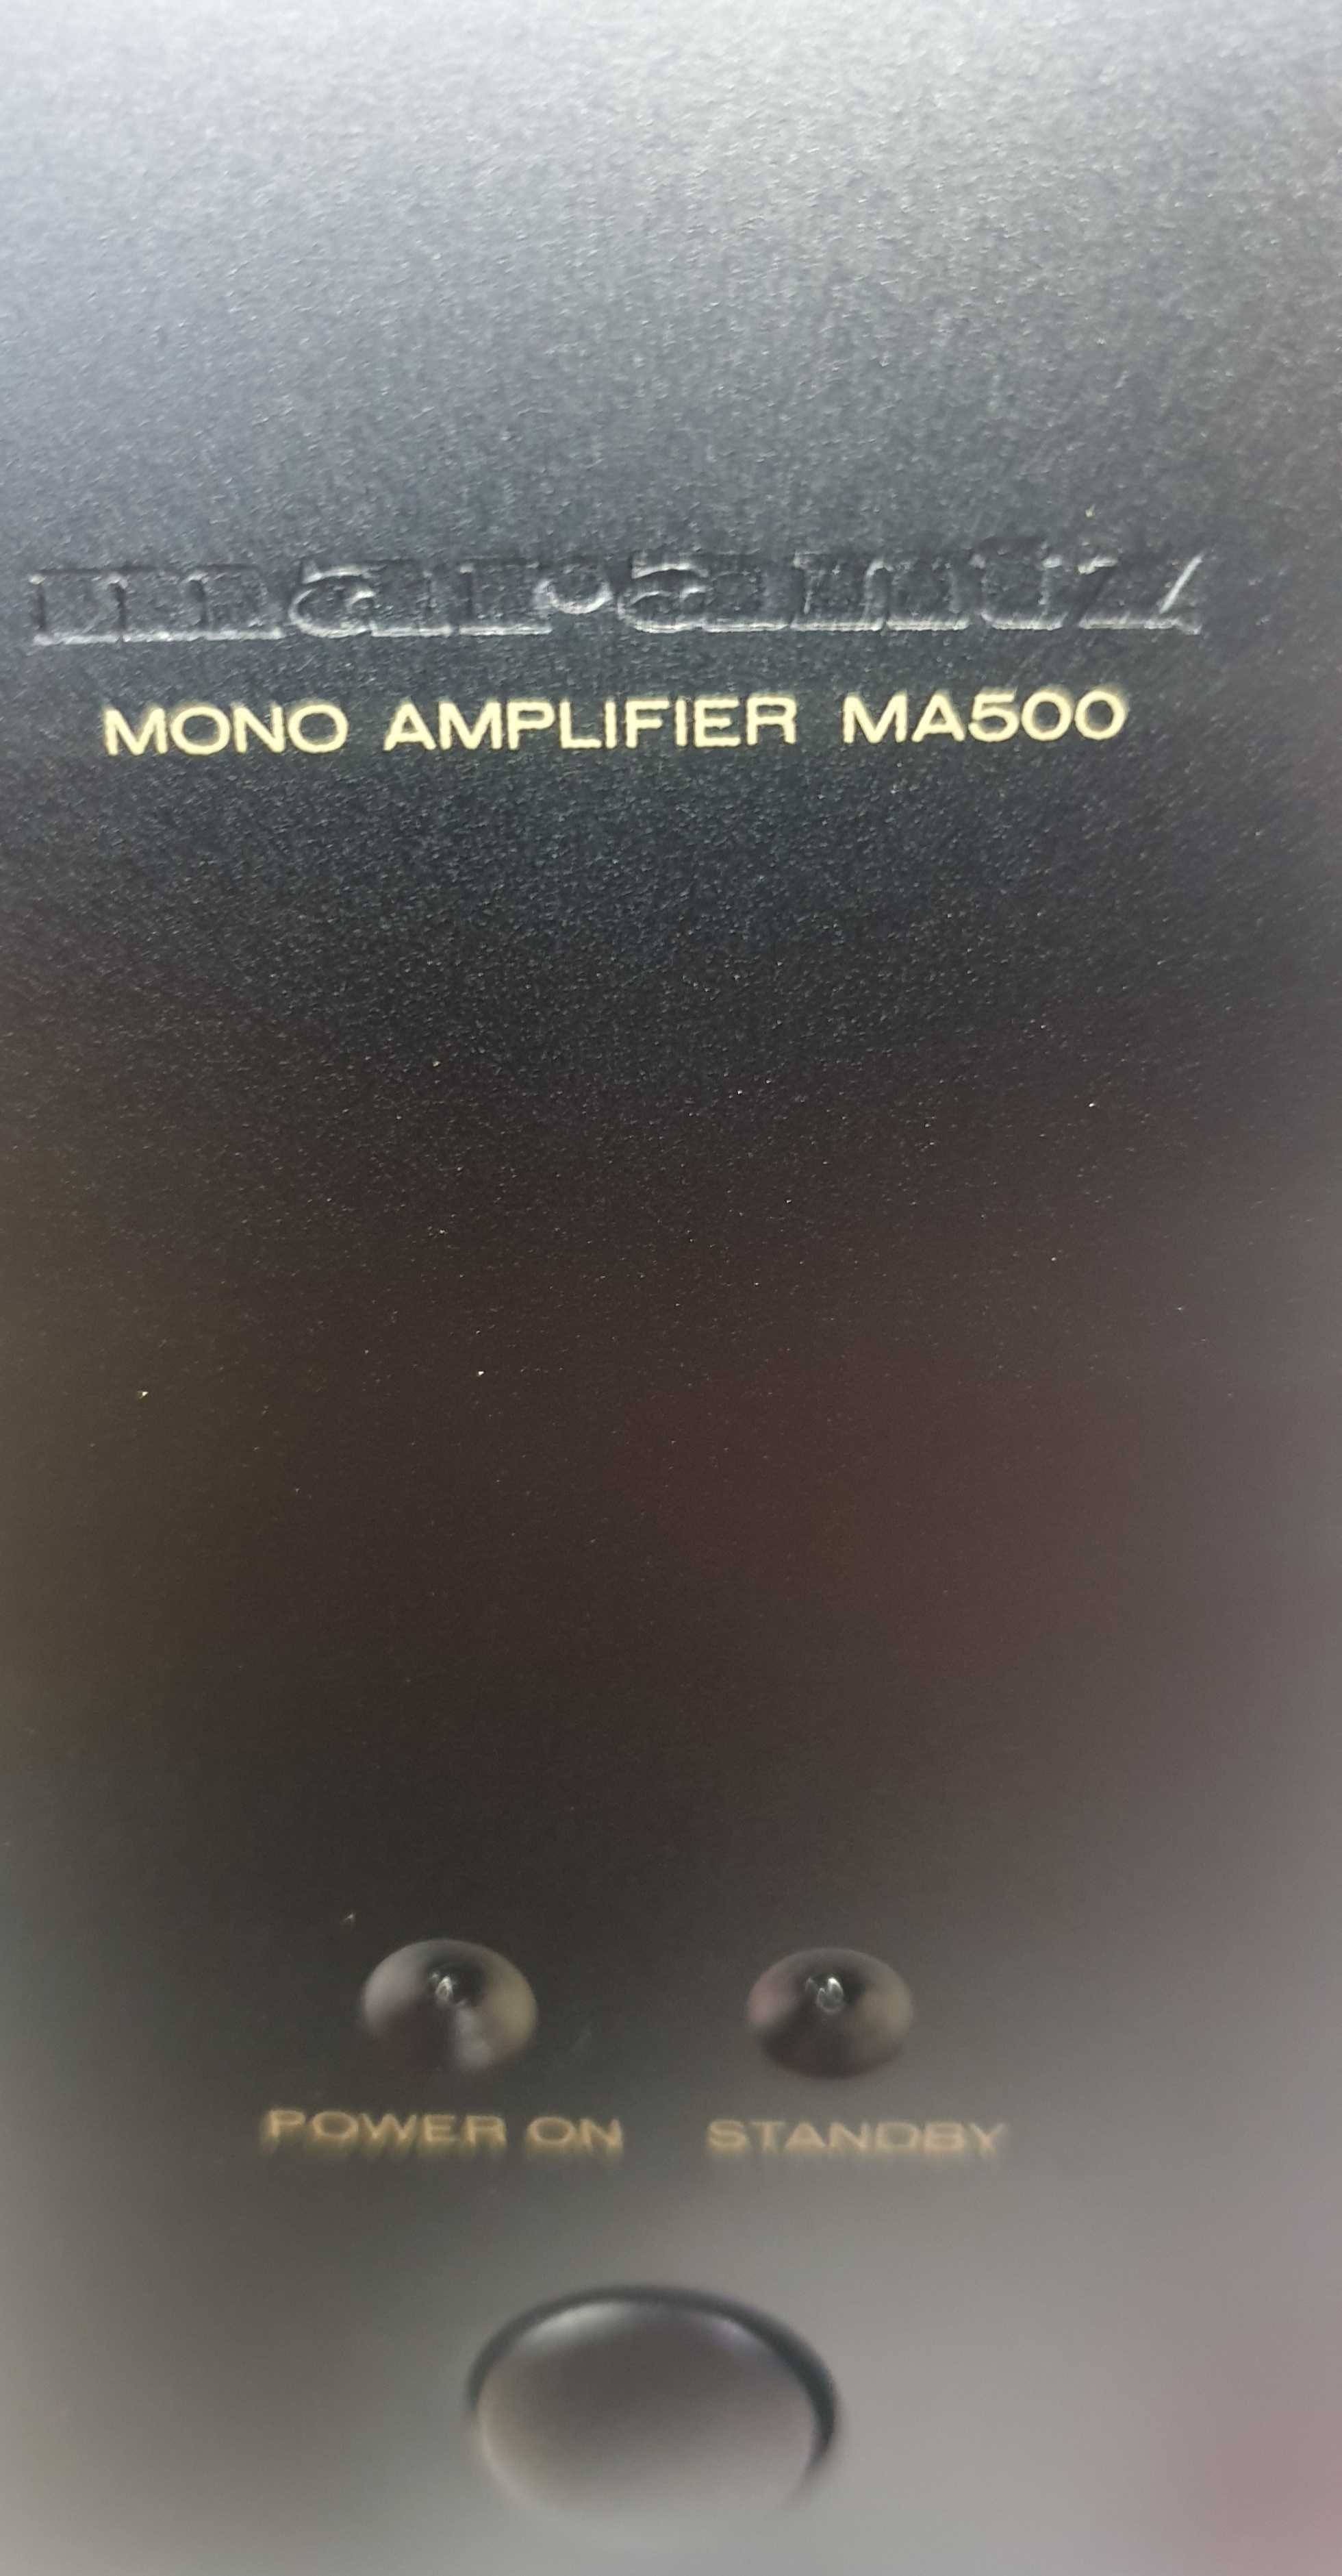 Marantz MA 500 monobloki dwie końcówki mocy